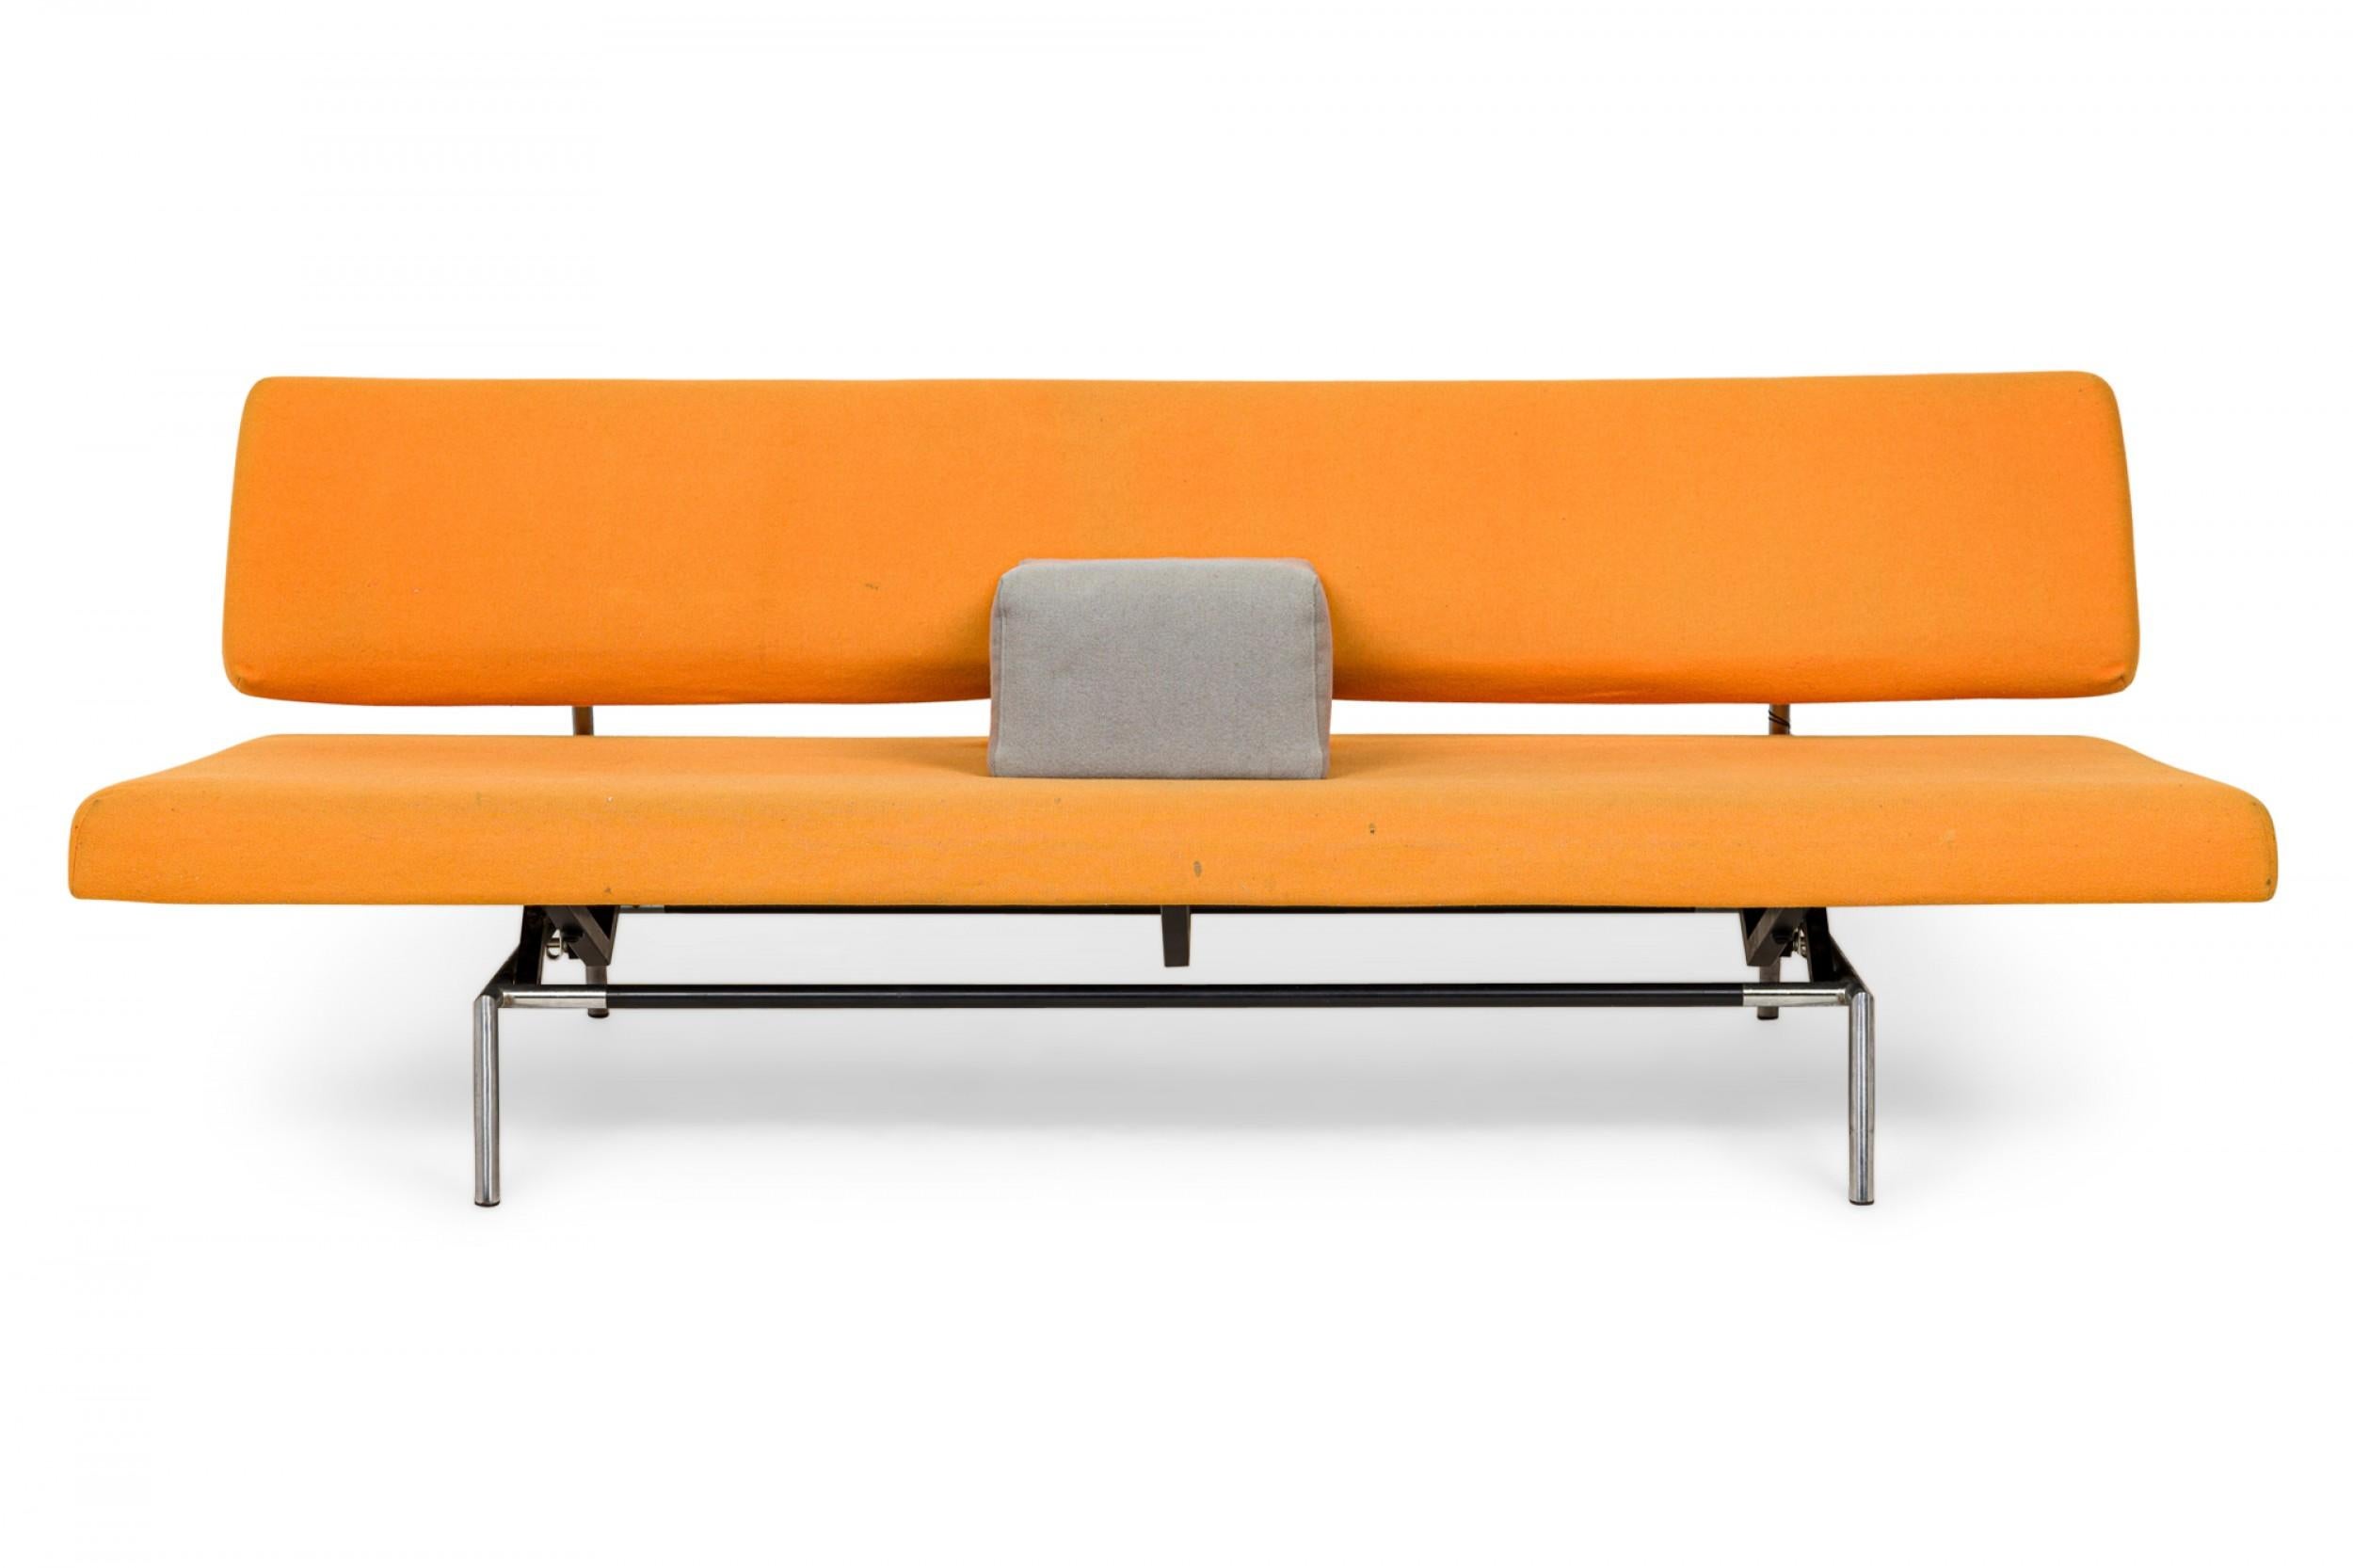 Canapé-lit de style moderne du milieu du siècle avec assise et dossier recouverts de feutre orange et soutenus par un cadre en métal argenté avec un mécanisme de déplacement qui permet au canapé de se convertir en lit de repos, avec un